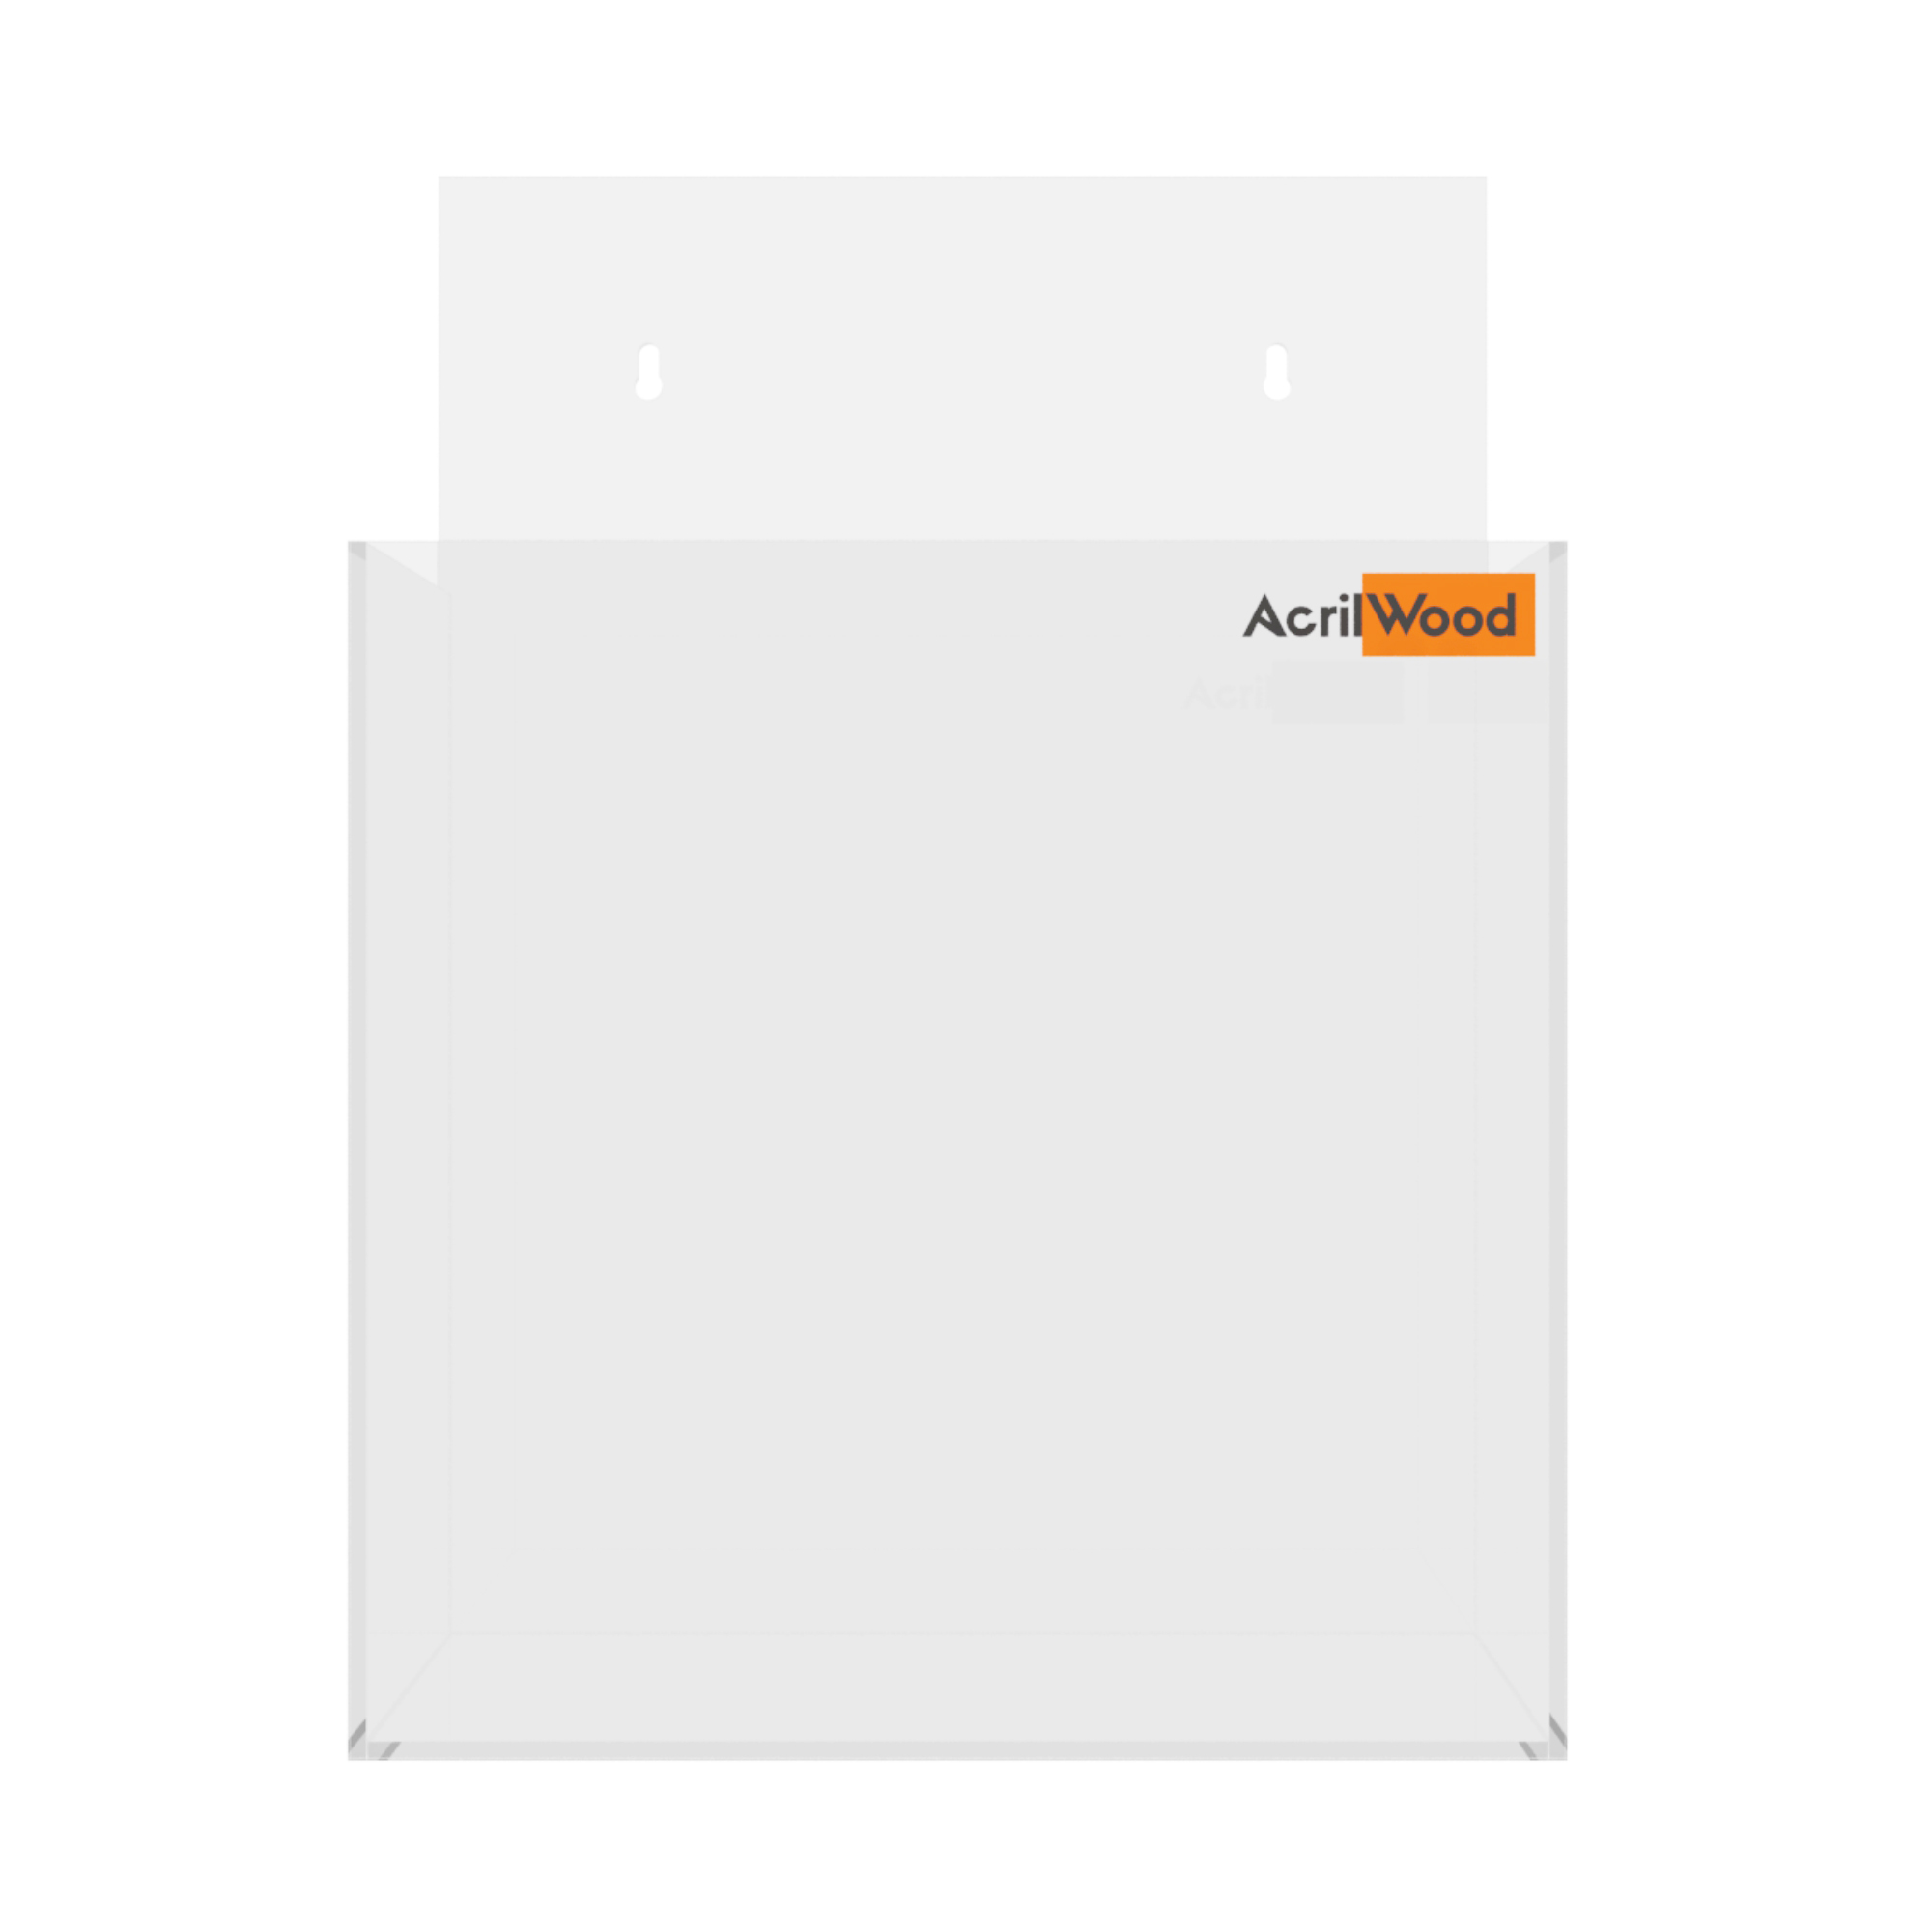 Imagem do Produto Display Porta Folder A5 em Acrílico de Parede Vertical